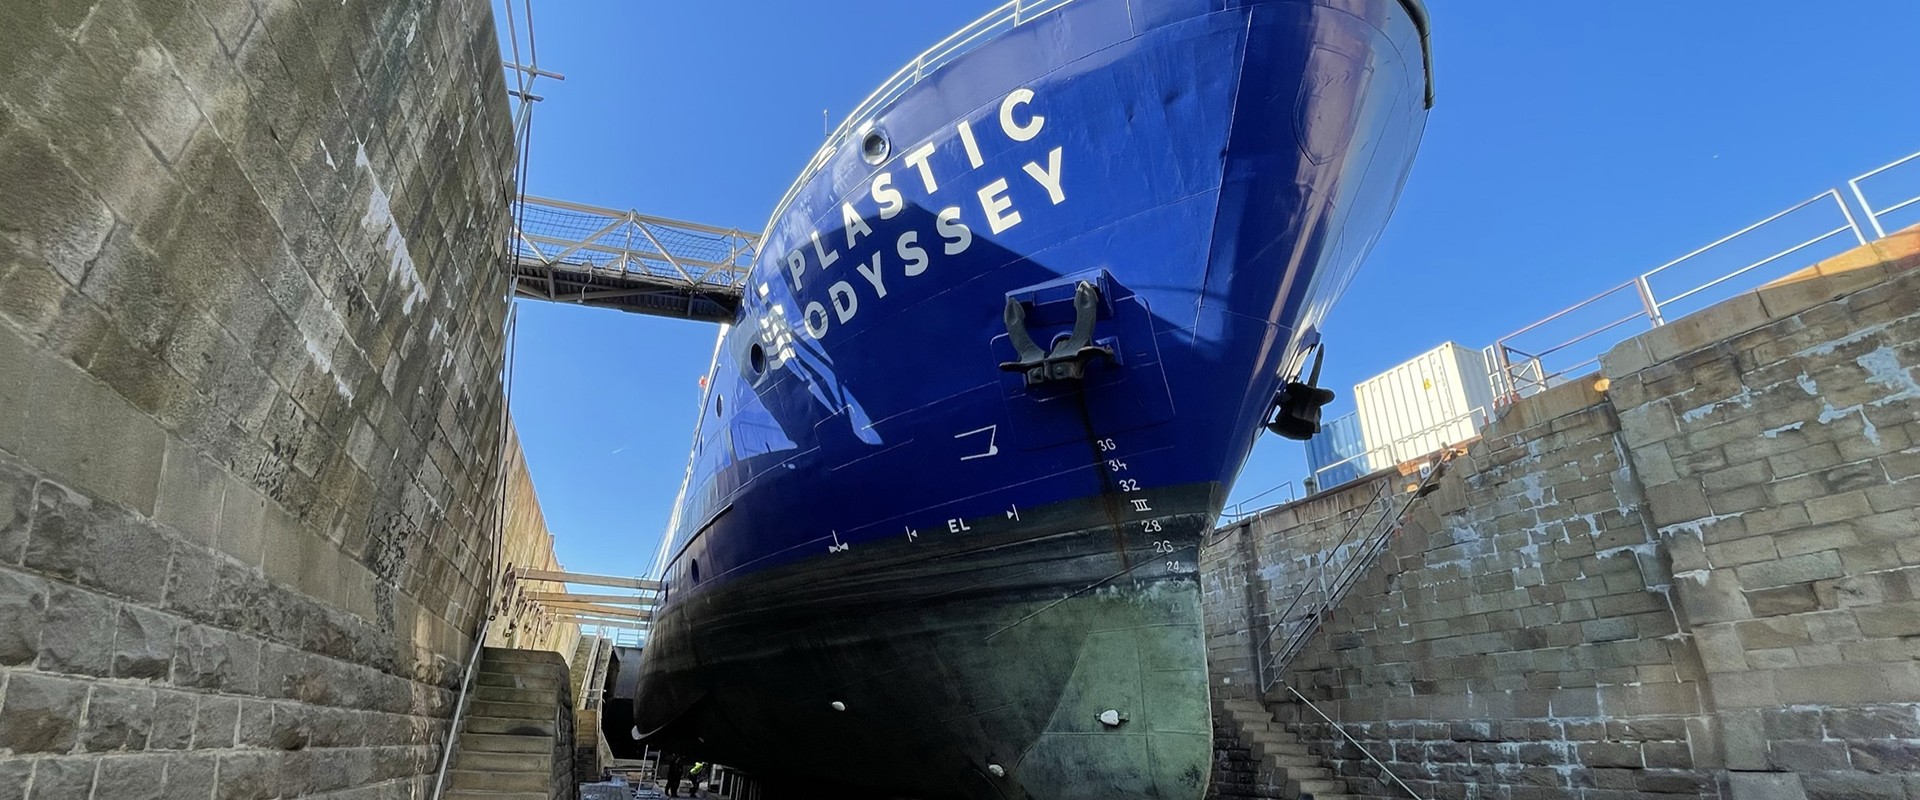 The Plastic Odyssey in Ship Repair Dock